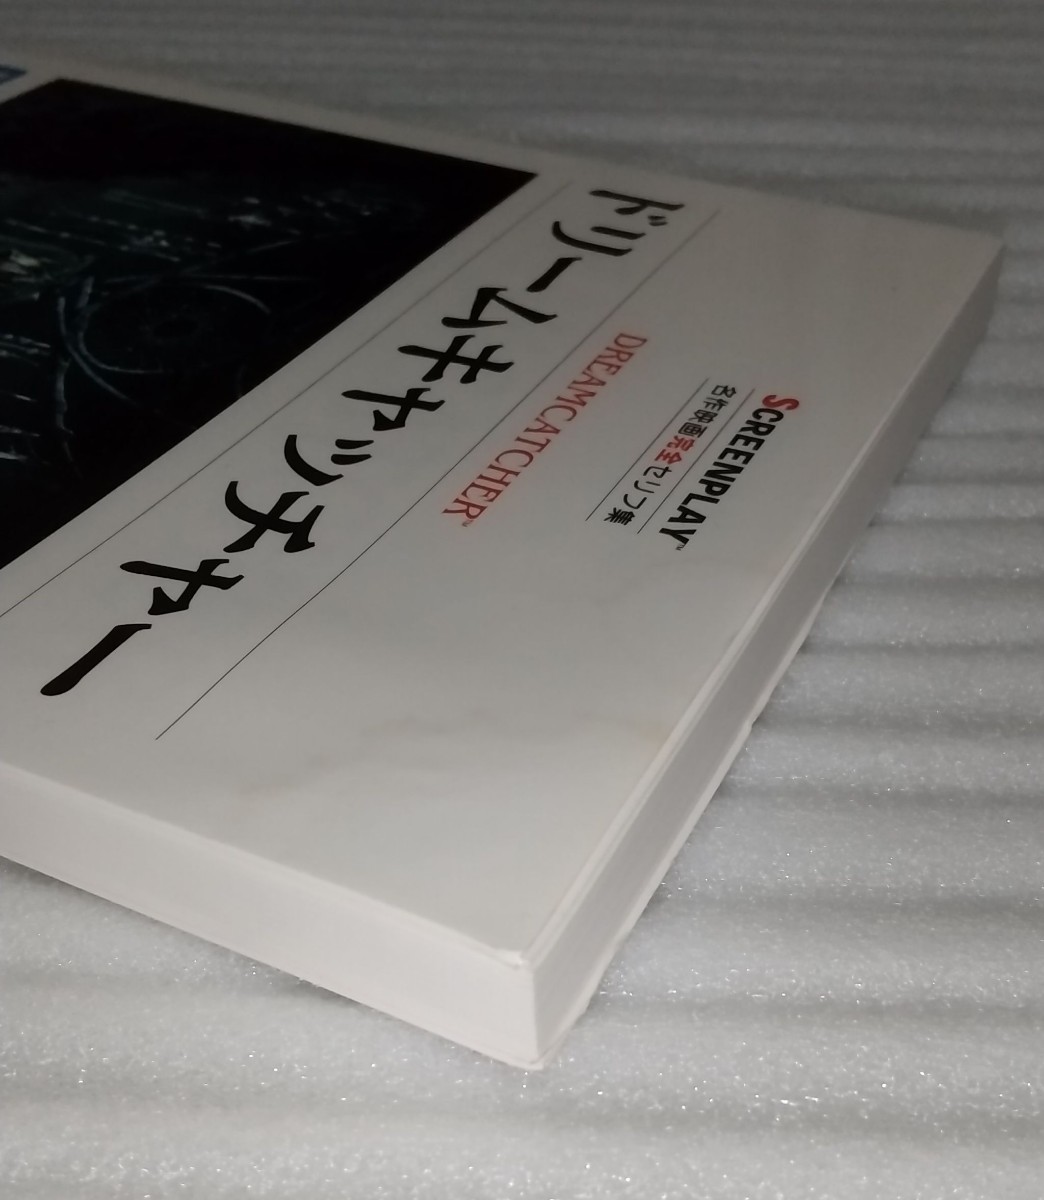 ドリームキャッチャー 名作映画完全セリフ集スクリーンプレイ シリーズ 英会話学習リーディング英語 日本語で文字化ツッコミ 9784894073463_※表紙の上部に多少の汚れがあります。